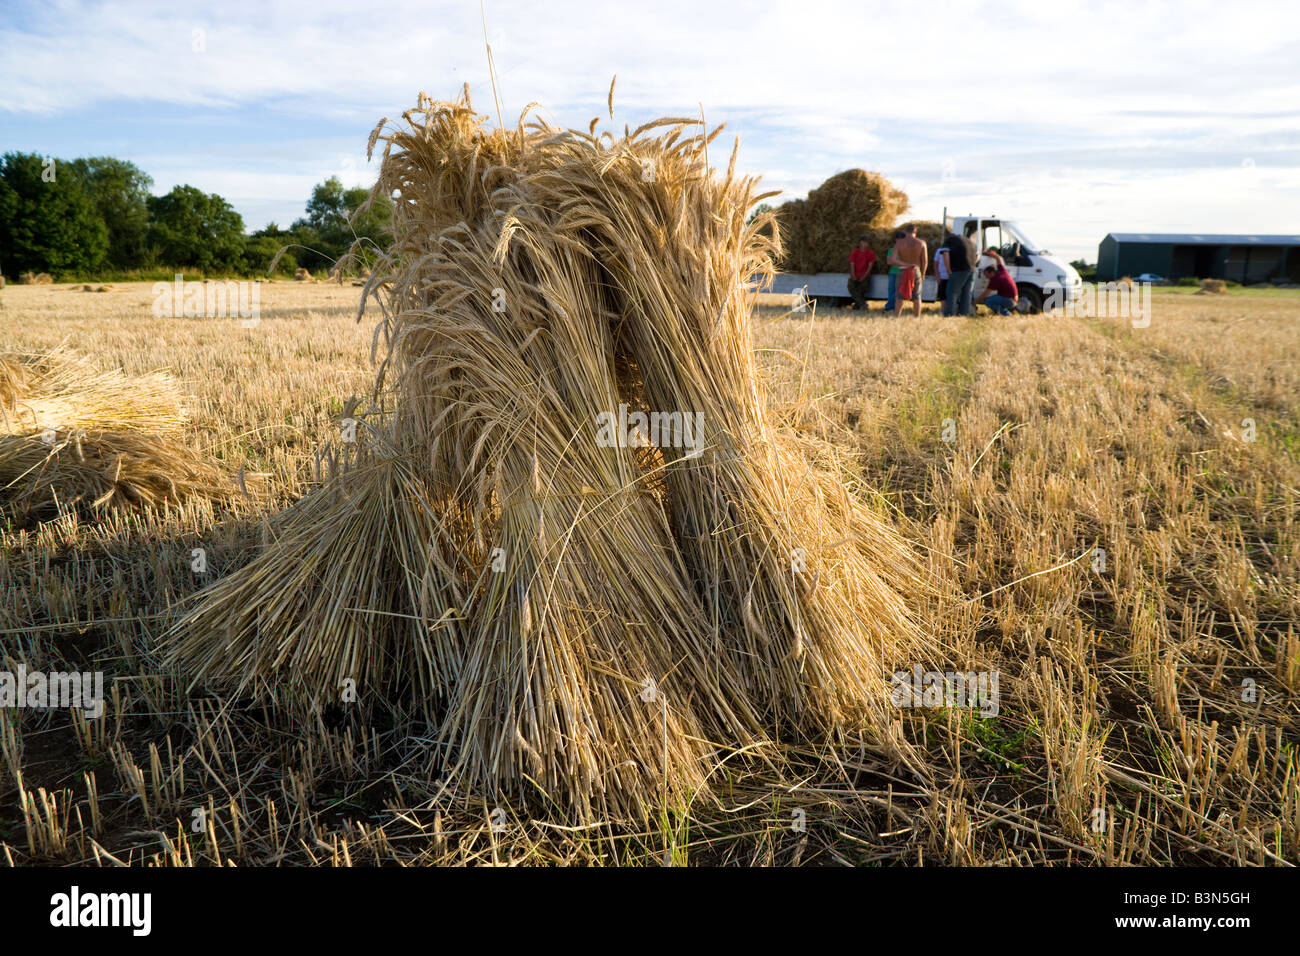 Oxfordshire Weizenfeld mit der speziellen lange stemmed Ernte, Trocknung in Garben oder Stooks für den Einsatz als Dach Thatch. Stockfoto